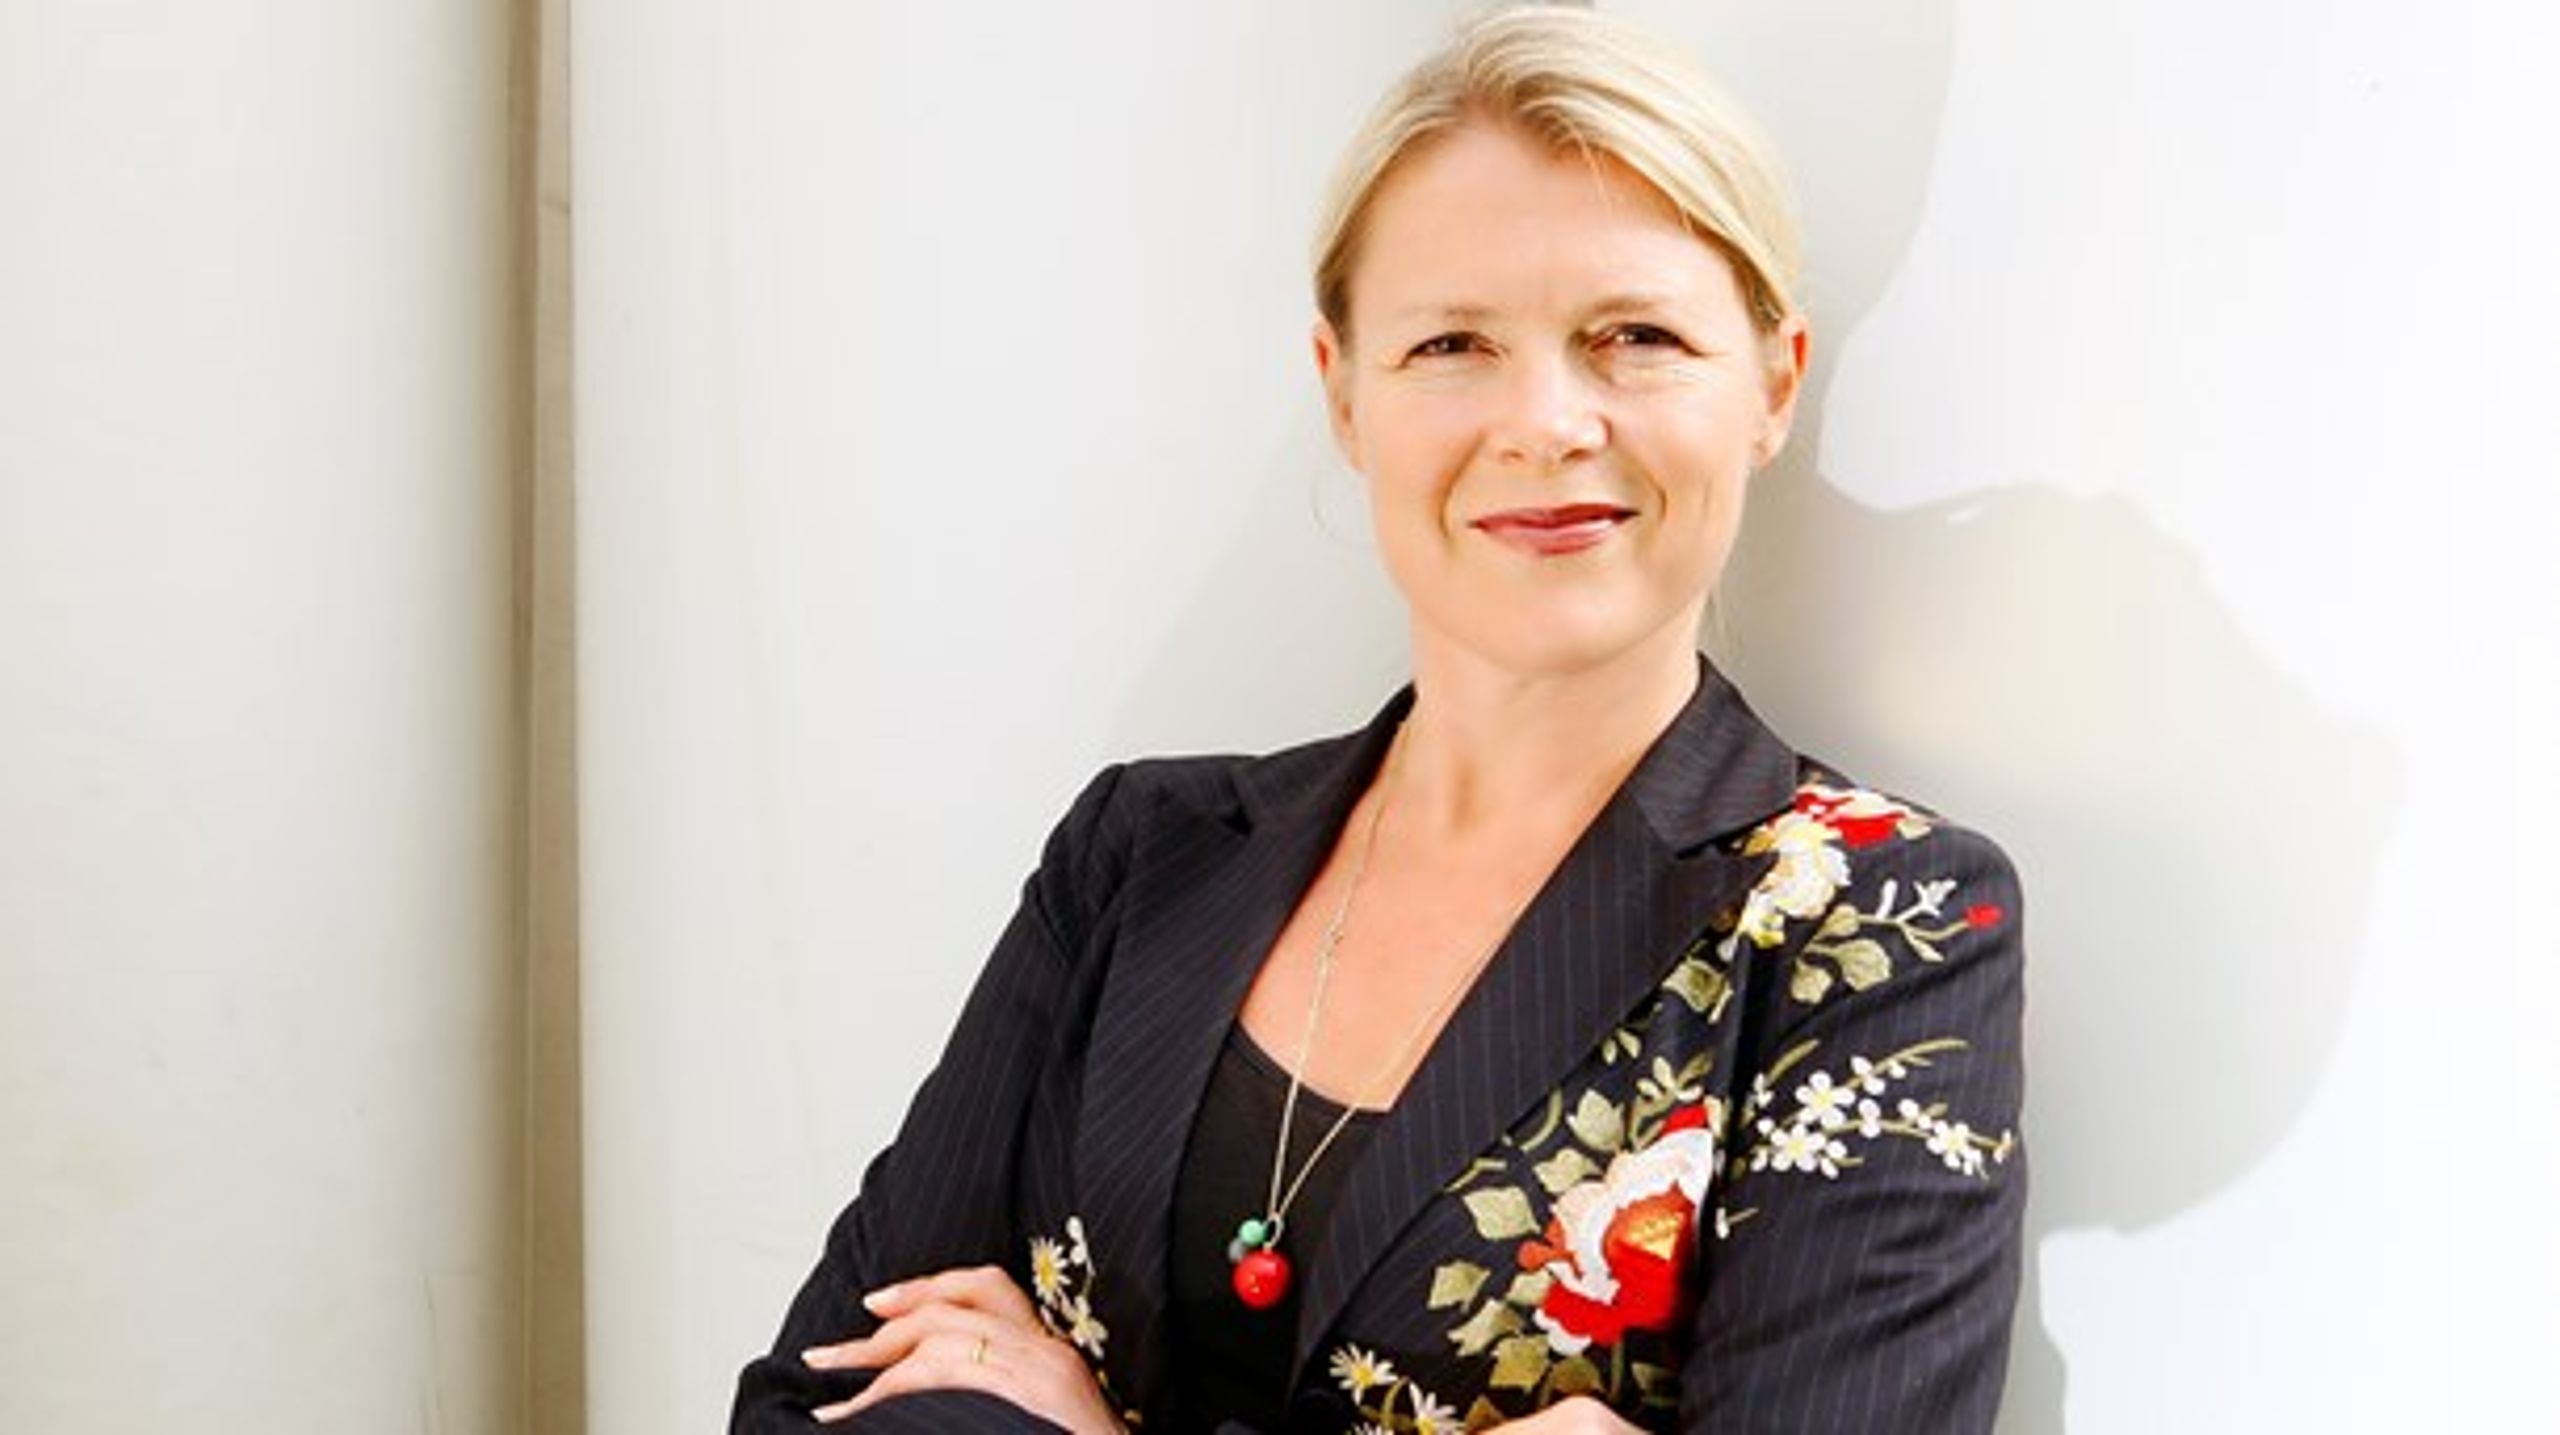 Formanden for Statens Kunstfond, Gitte Ørskou, efterlyser større diversitet i kulturlivet.